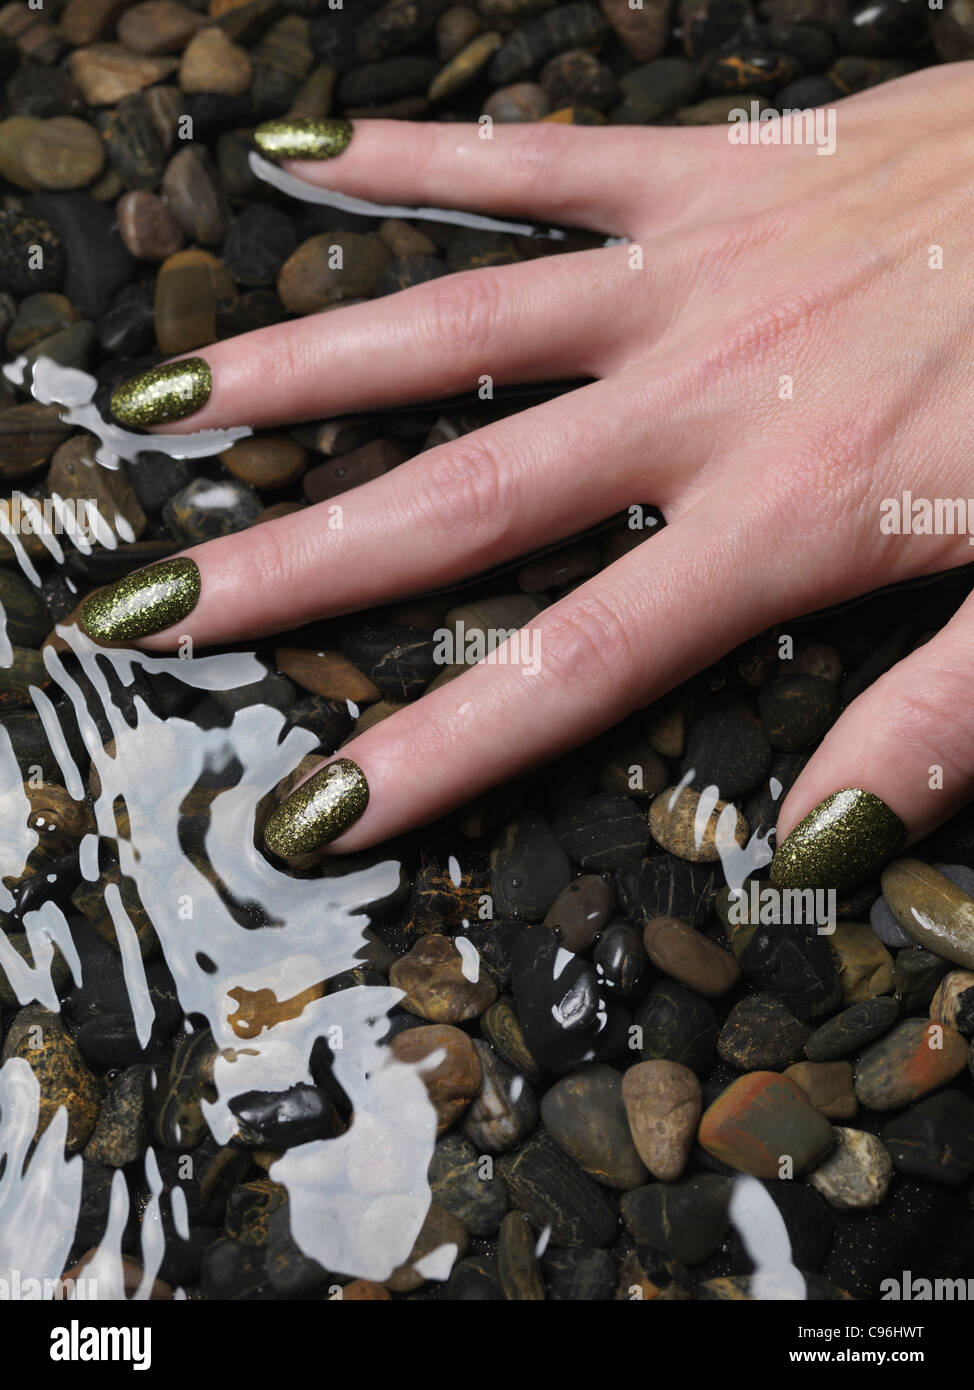 Lizenz erhältlich unter MaximImages.com Nahaufnahme der Frauenhand mit grünem, feinem nagellack in Wasser Stockfoto